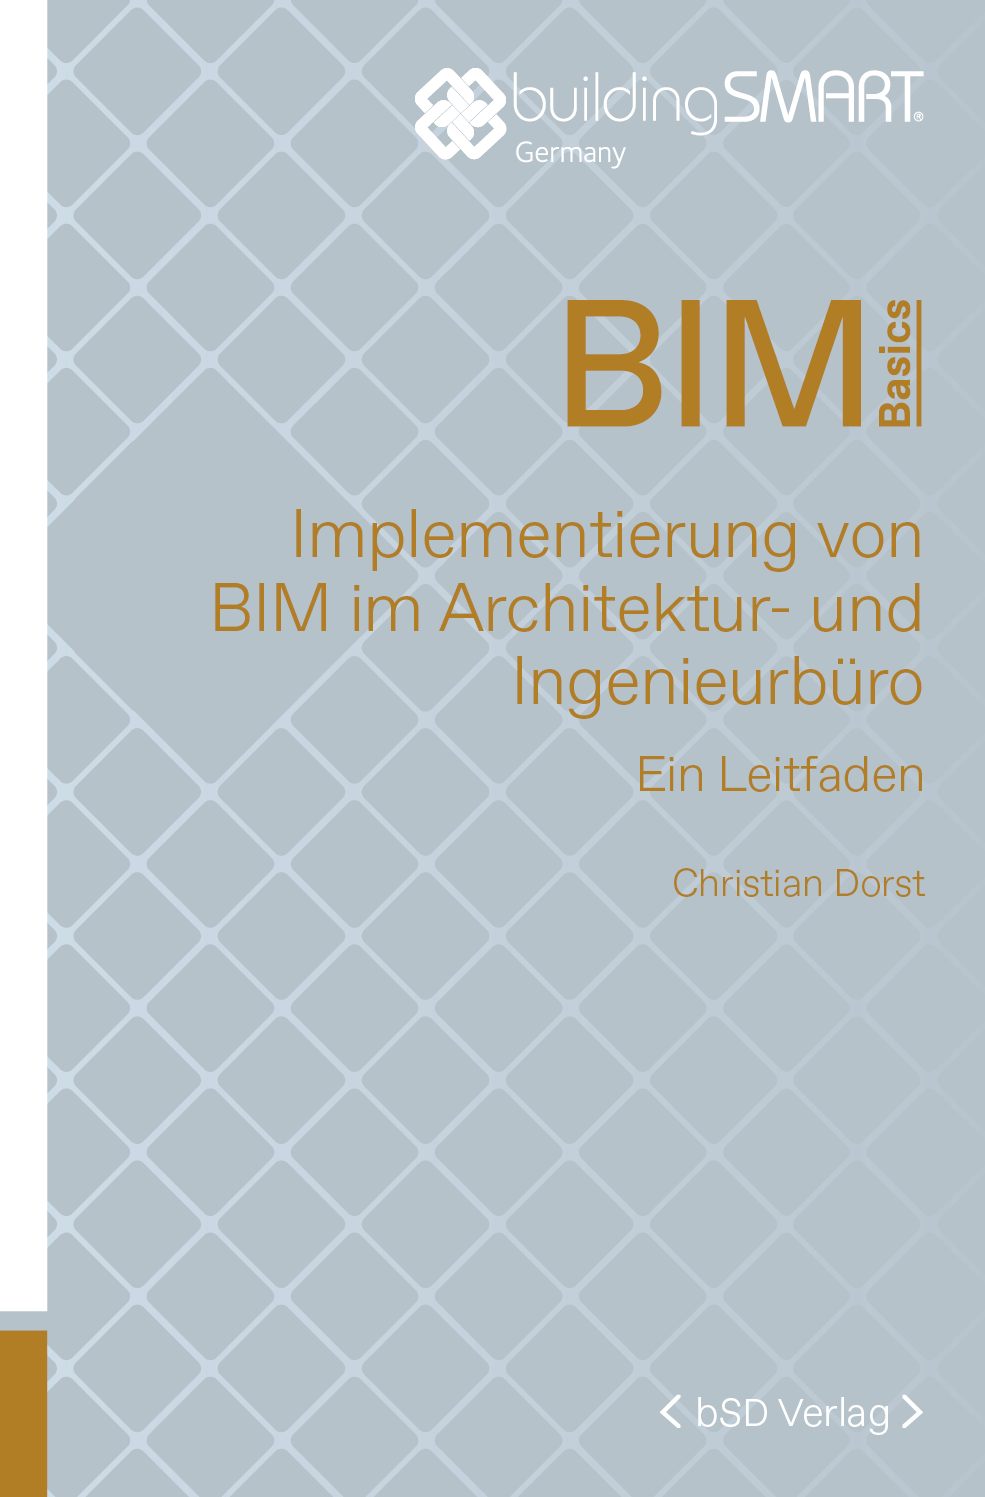 bSD Verlag/BIM Basics: Implementierung von BIM